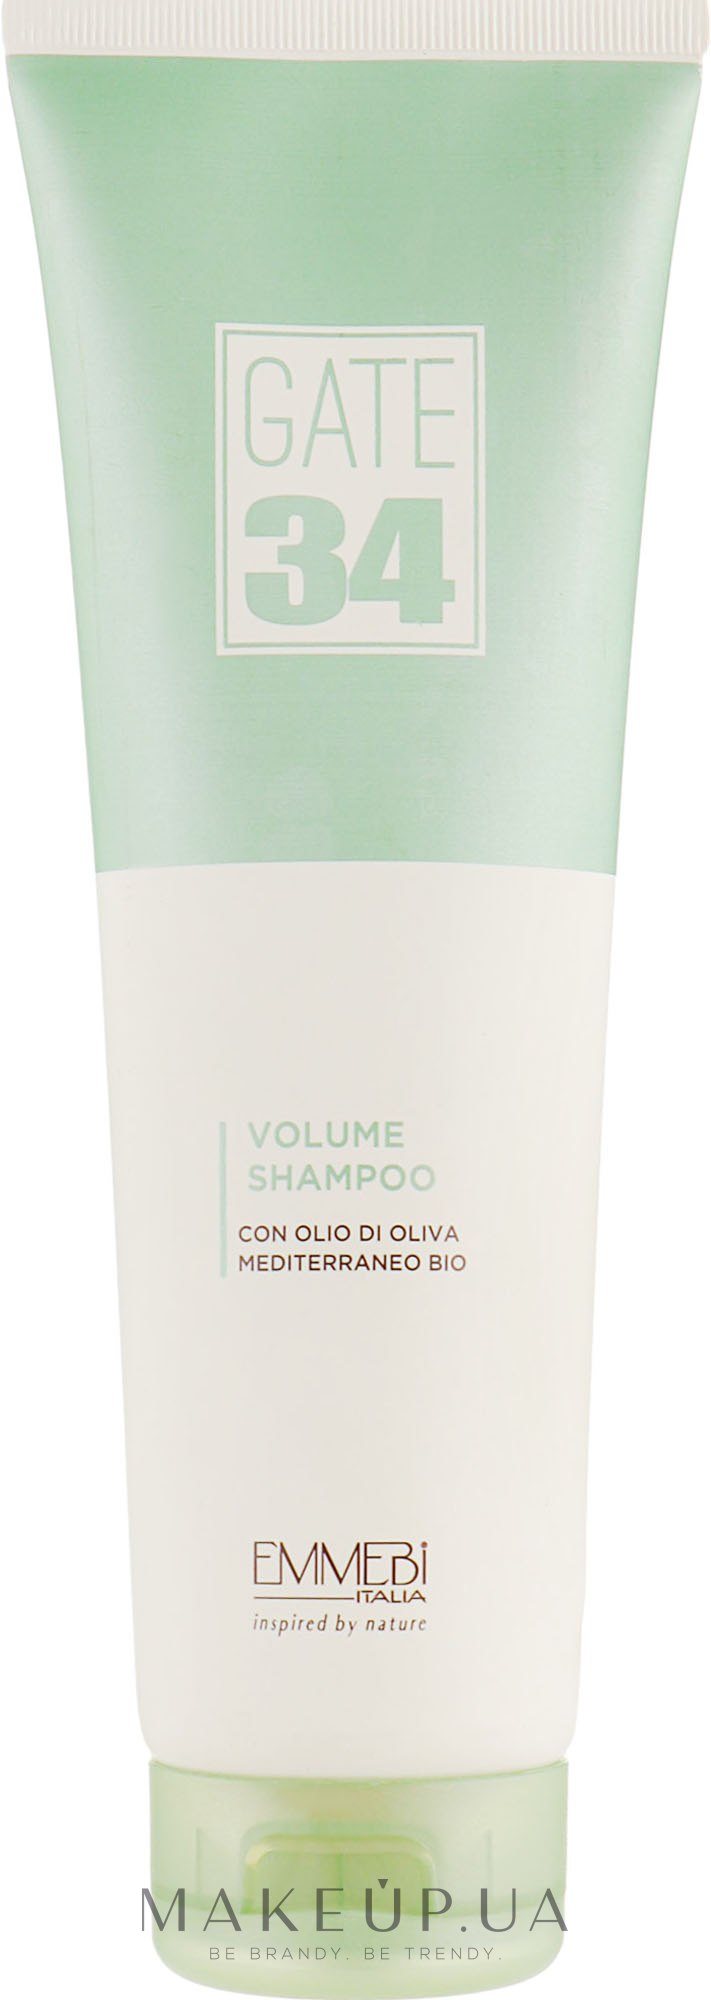 Шампунь для об'єму з органічною олією оливи - Emmebi Italia Gate 34 Oliva Bio Volume Shampoo — фото 250ml